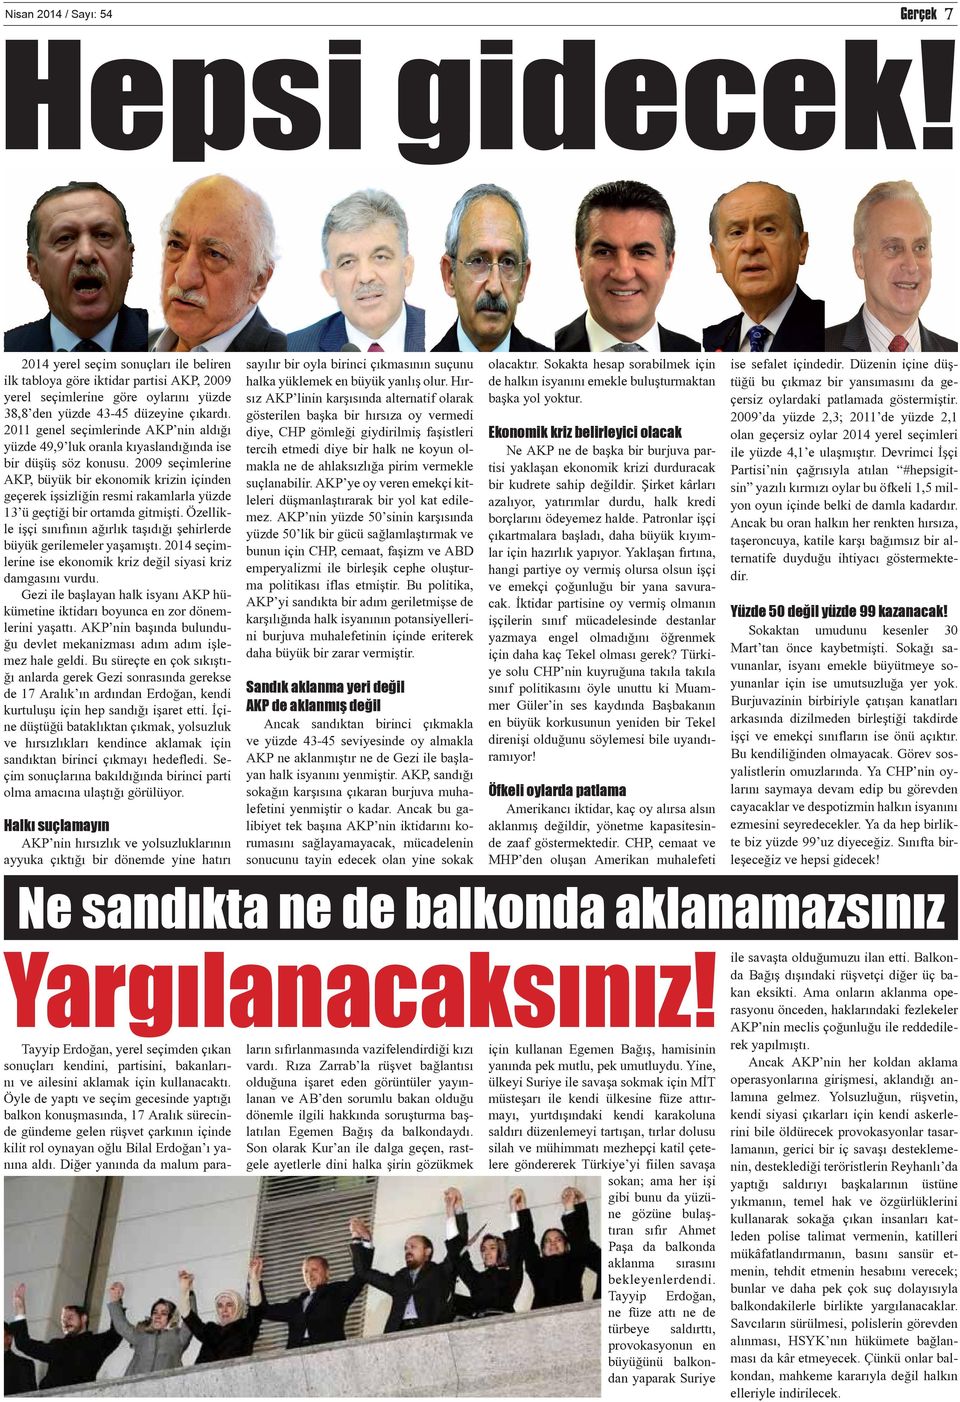 2009 seçimlerine AKP, büyük bir ekonomik krizin içinden geçerek işsizliğin resmi rakamlarla yüzde 13 ü geçtiği bir ortamda gitmişti.